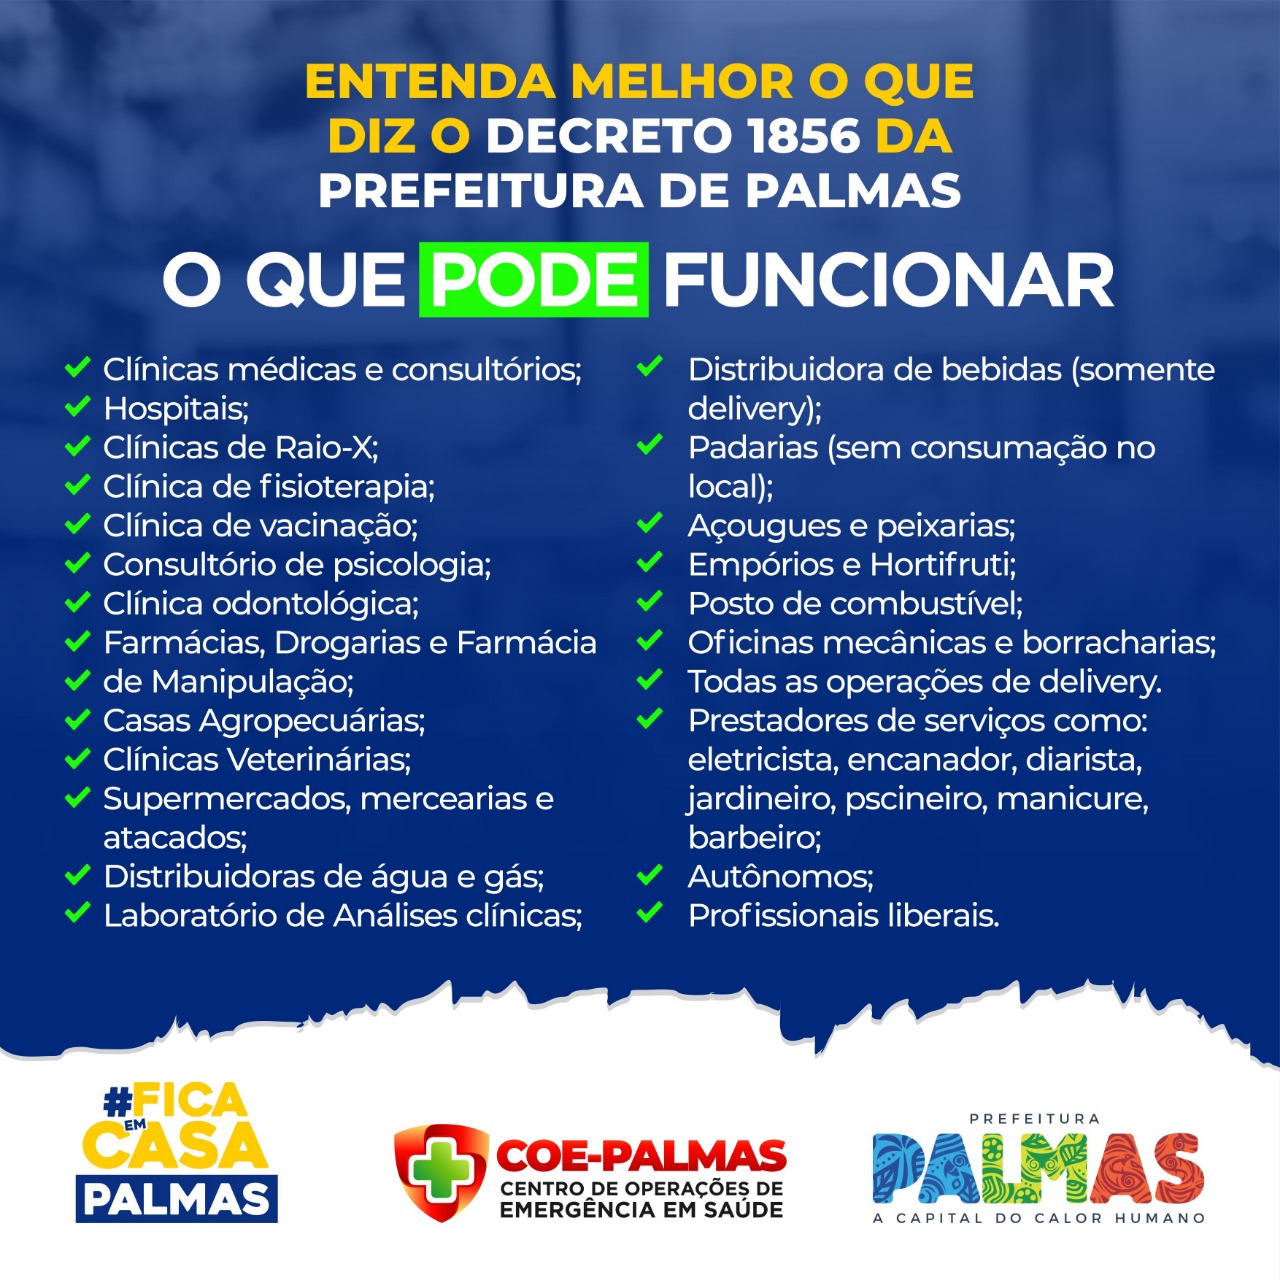 Confira a lista das 24 atividades que podem abrir e as 23 que não podem em Palmas durante a quarentena